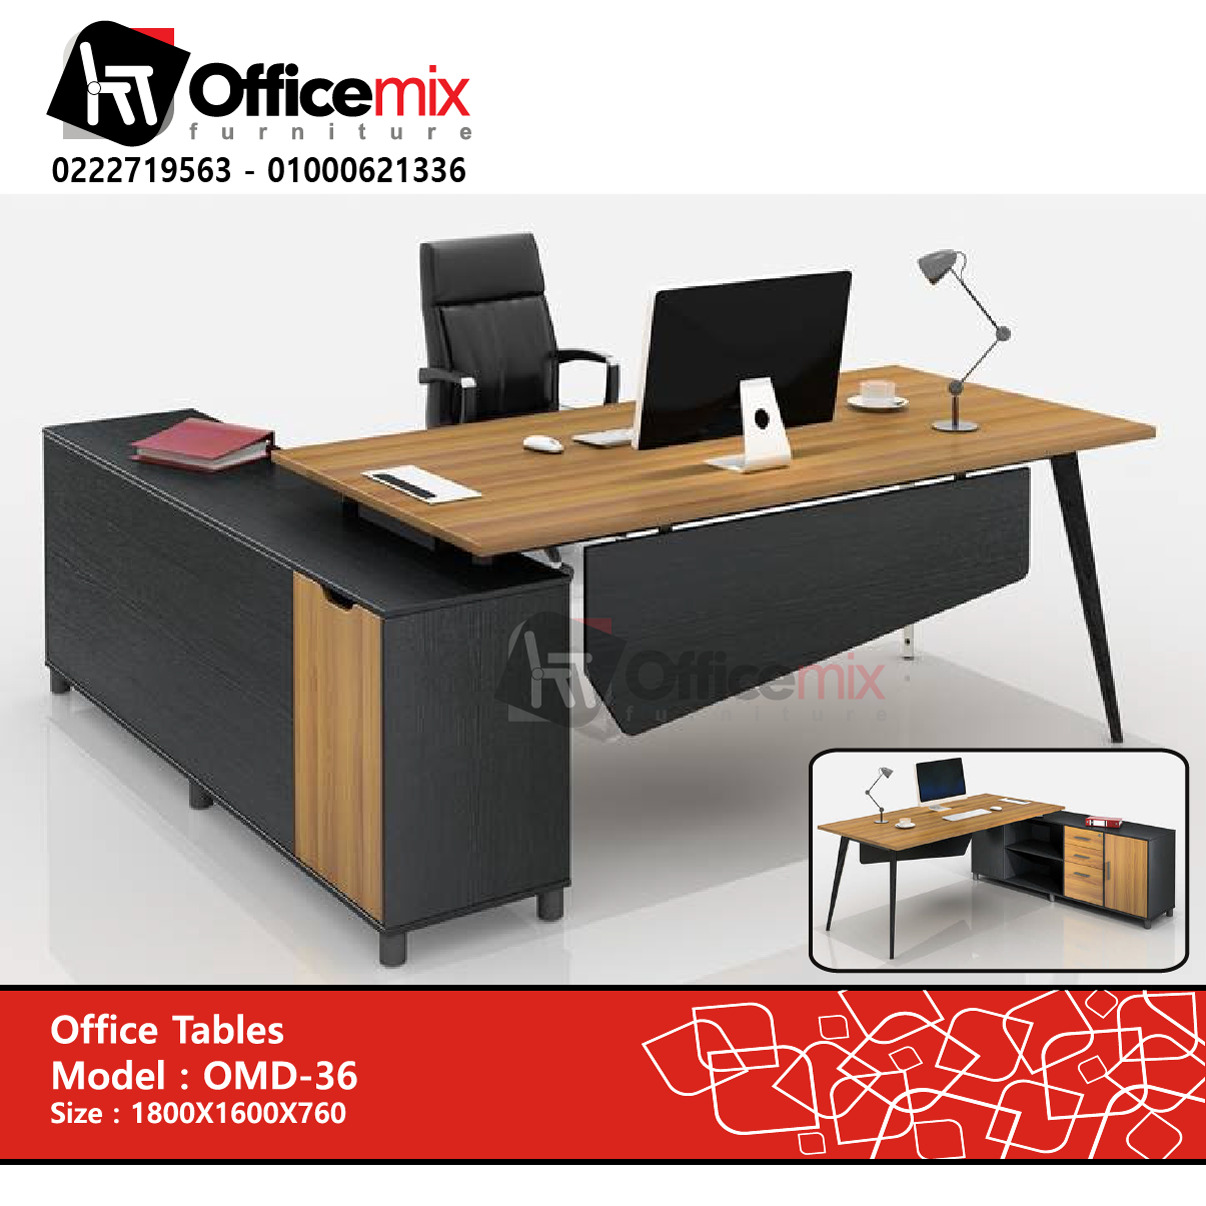 office mix Manager Desk OMD-36